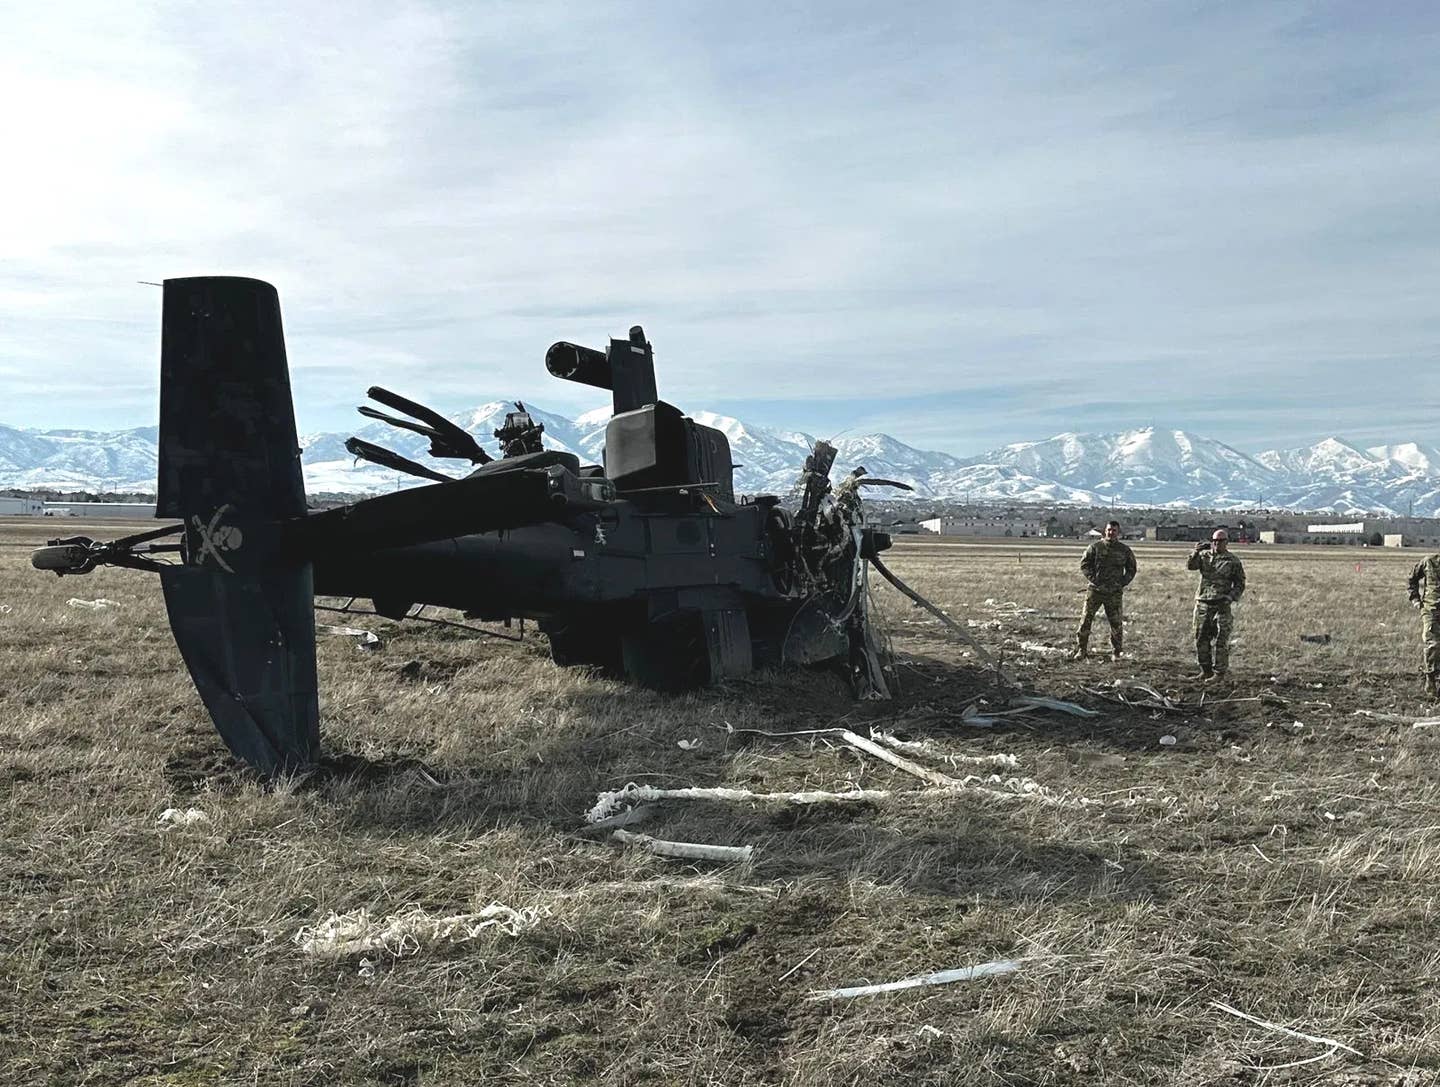 The aftermath of the February 13 AH-64D crash in Utah. <em>Utah National Guard via KUTV</em>